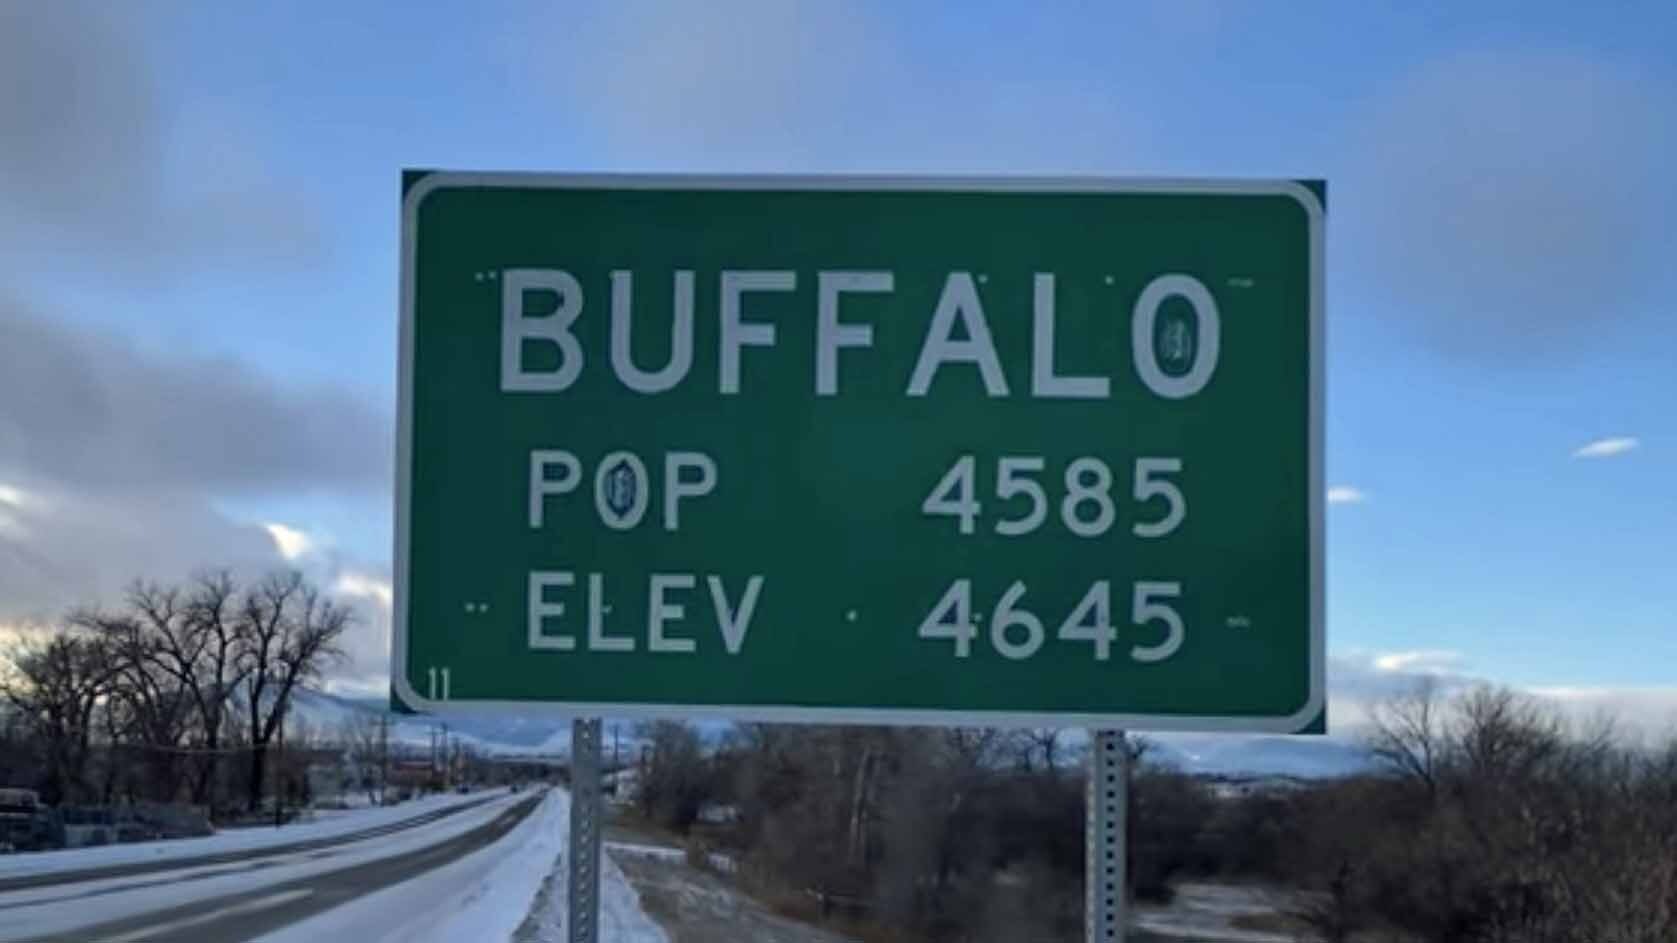 Buffal wyoming road sign